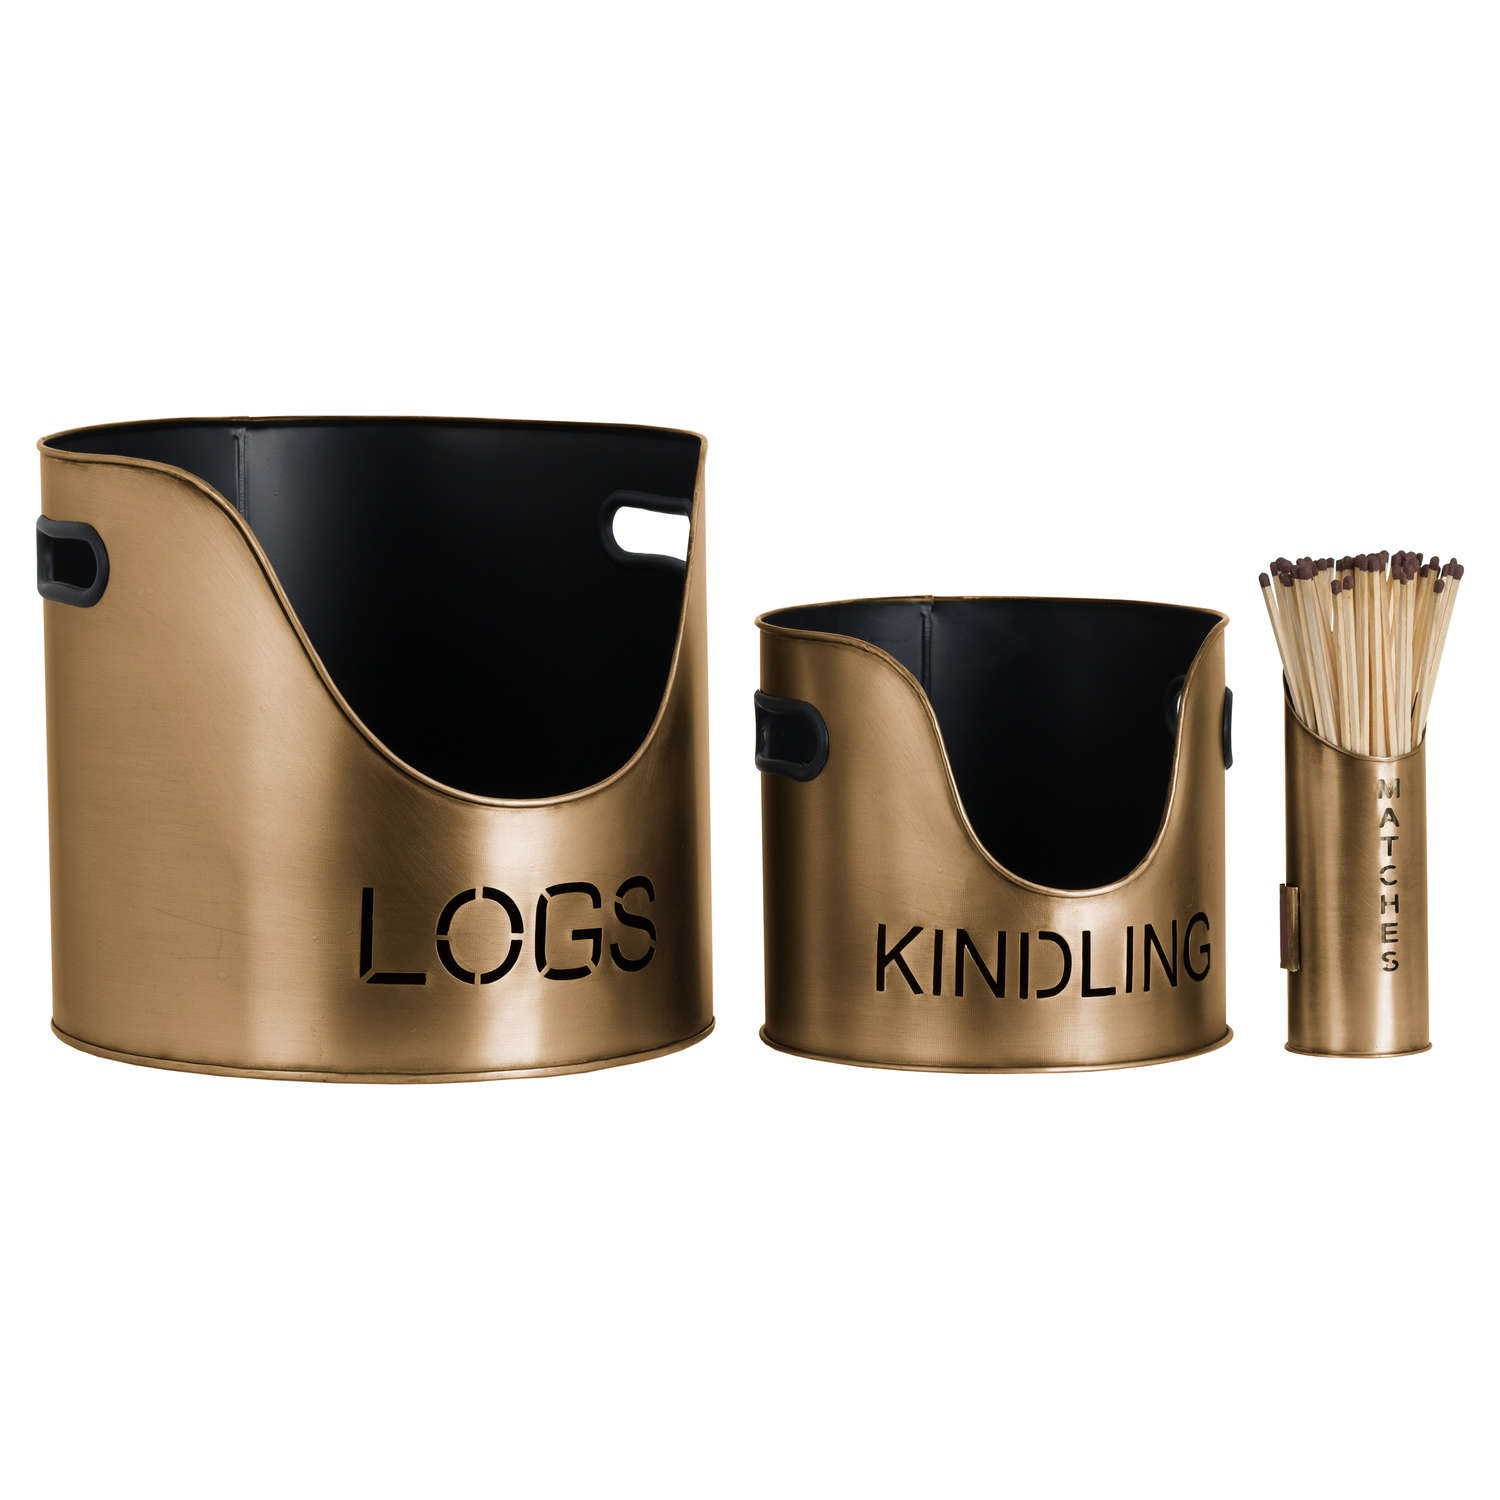 Log’s & Kindling Buckets + Matchstick Antique Bronze